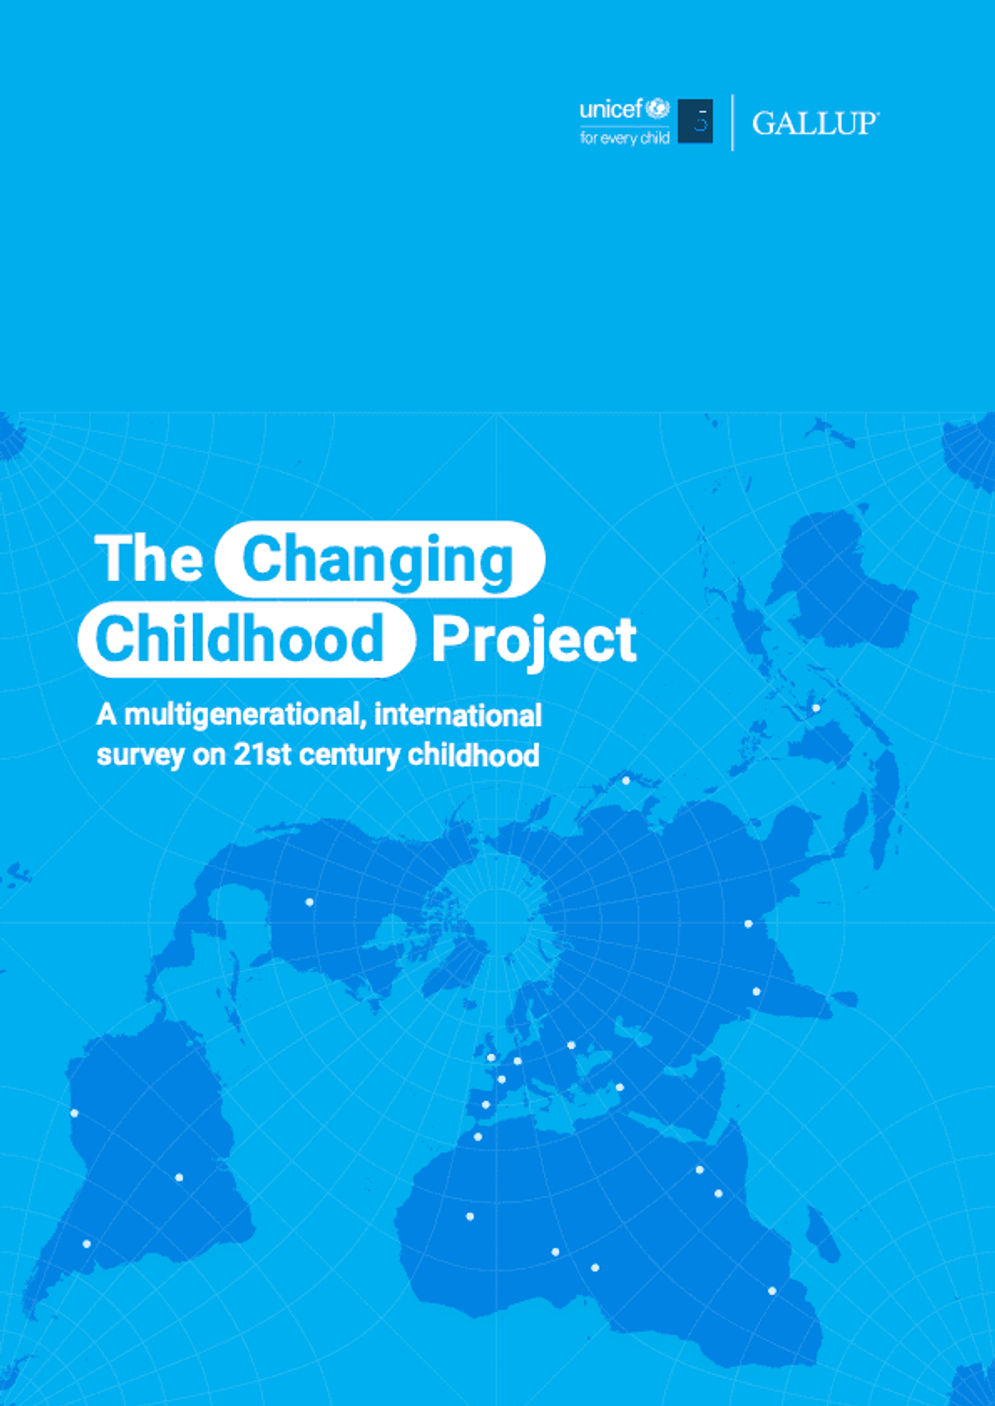 UNICEF meluncurkan platform interaktif baru, www.unicef.org/changing-childhood, yang berisi data lengkap dan laporan survei.